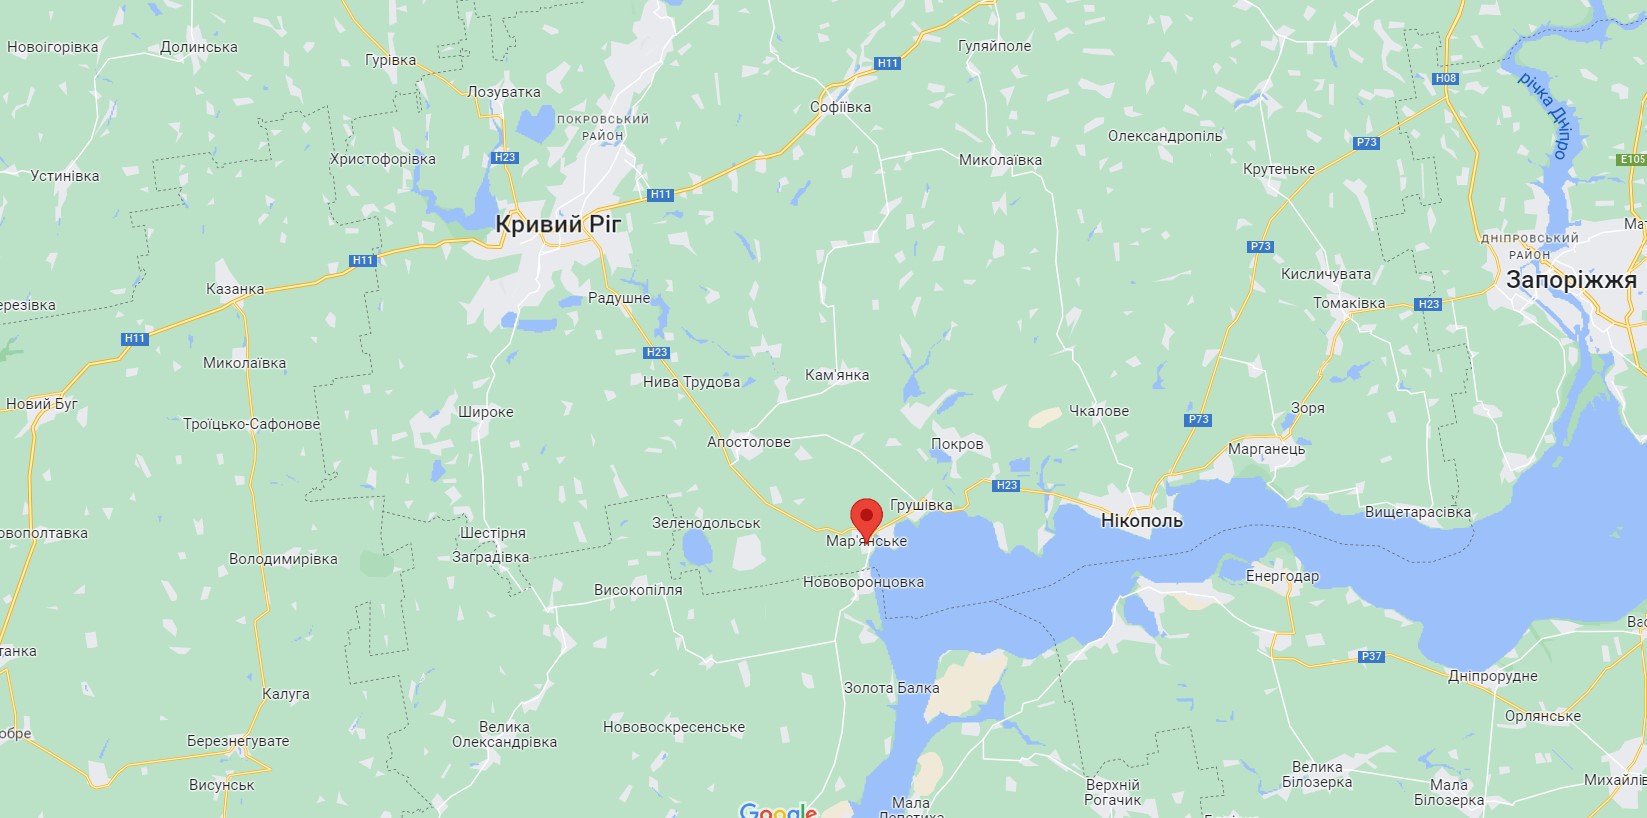 Dnipropetrovsk region: Russian aggressors fired on the Zelenodolsk hromada